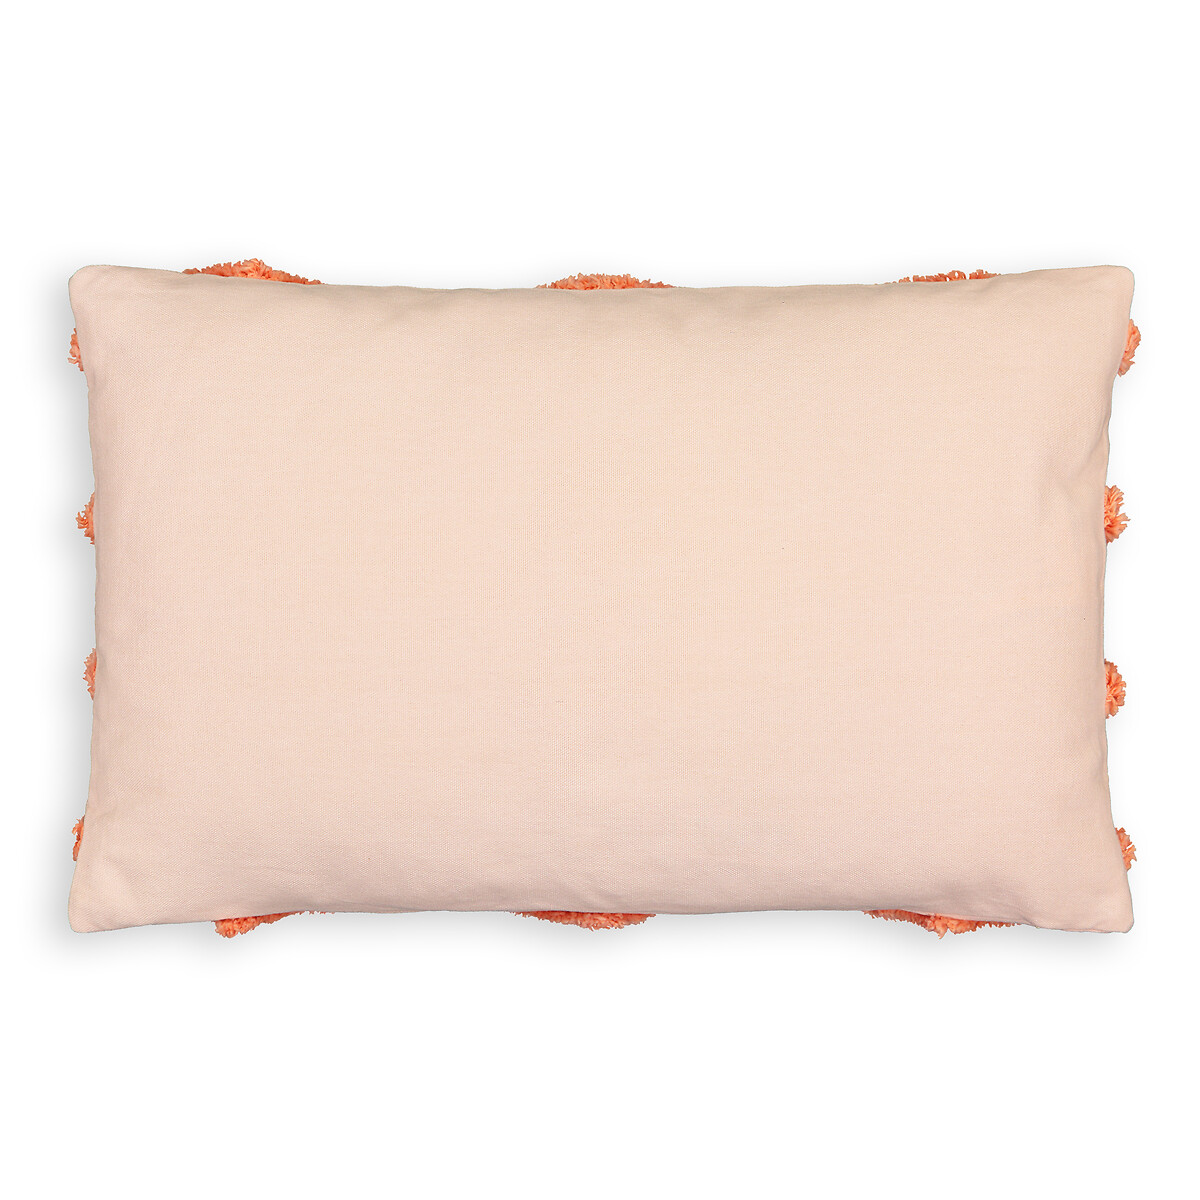 Чехол LA REDOUTE INTERIEURS На подушку прямоугольный Gotland 50 x 30 см розовый, размер 50 x 30 см - фото 2